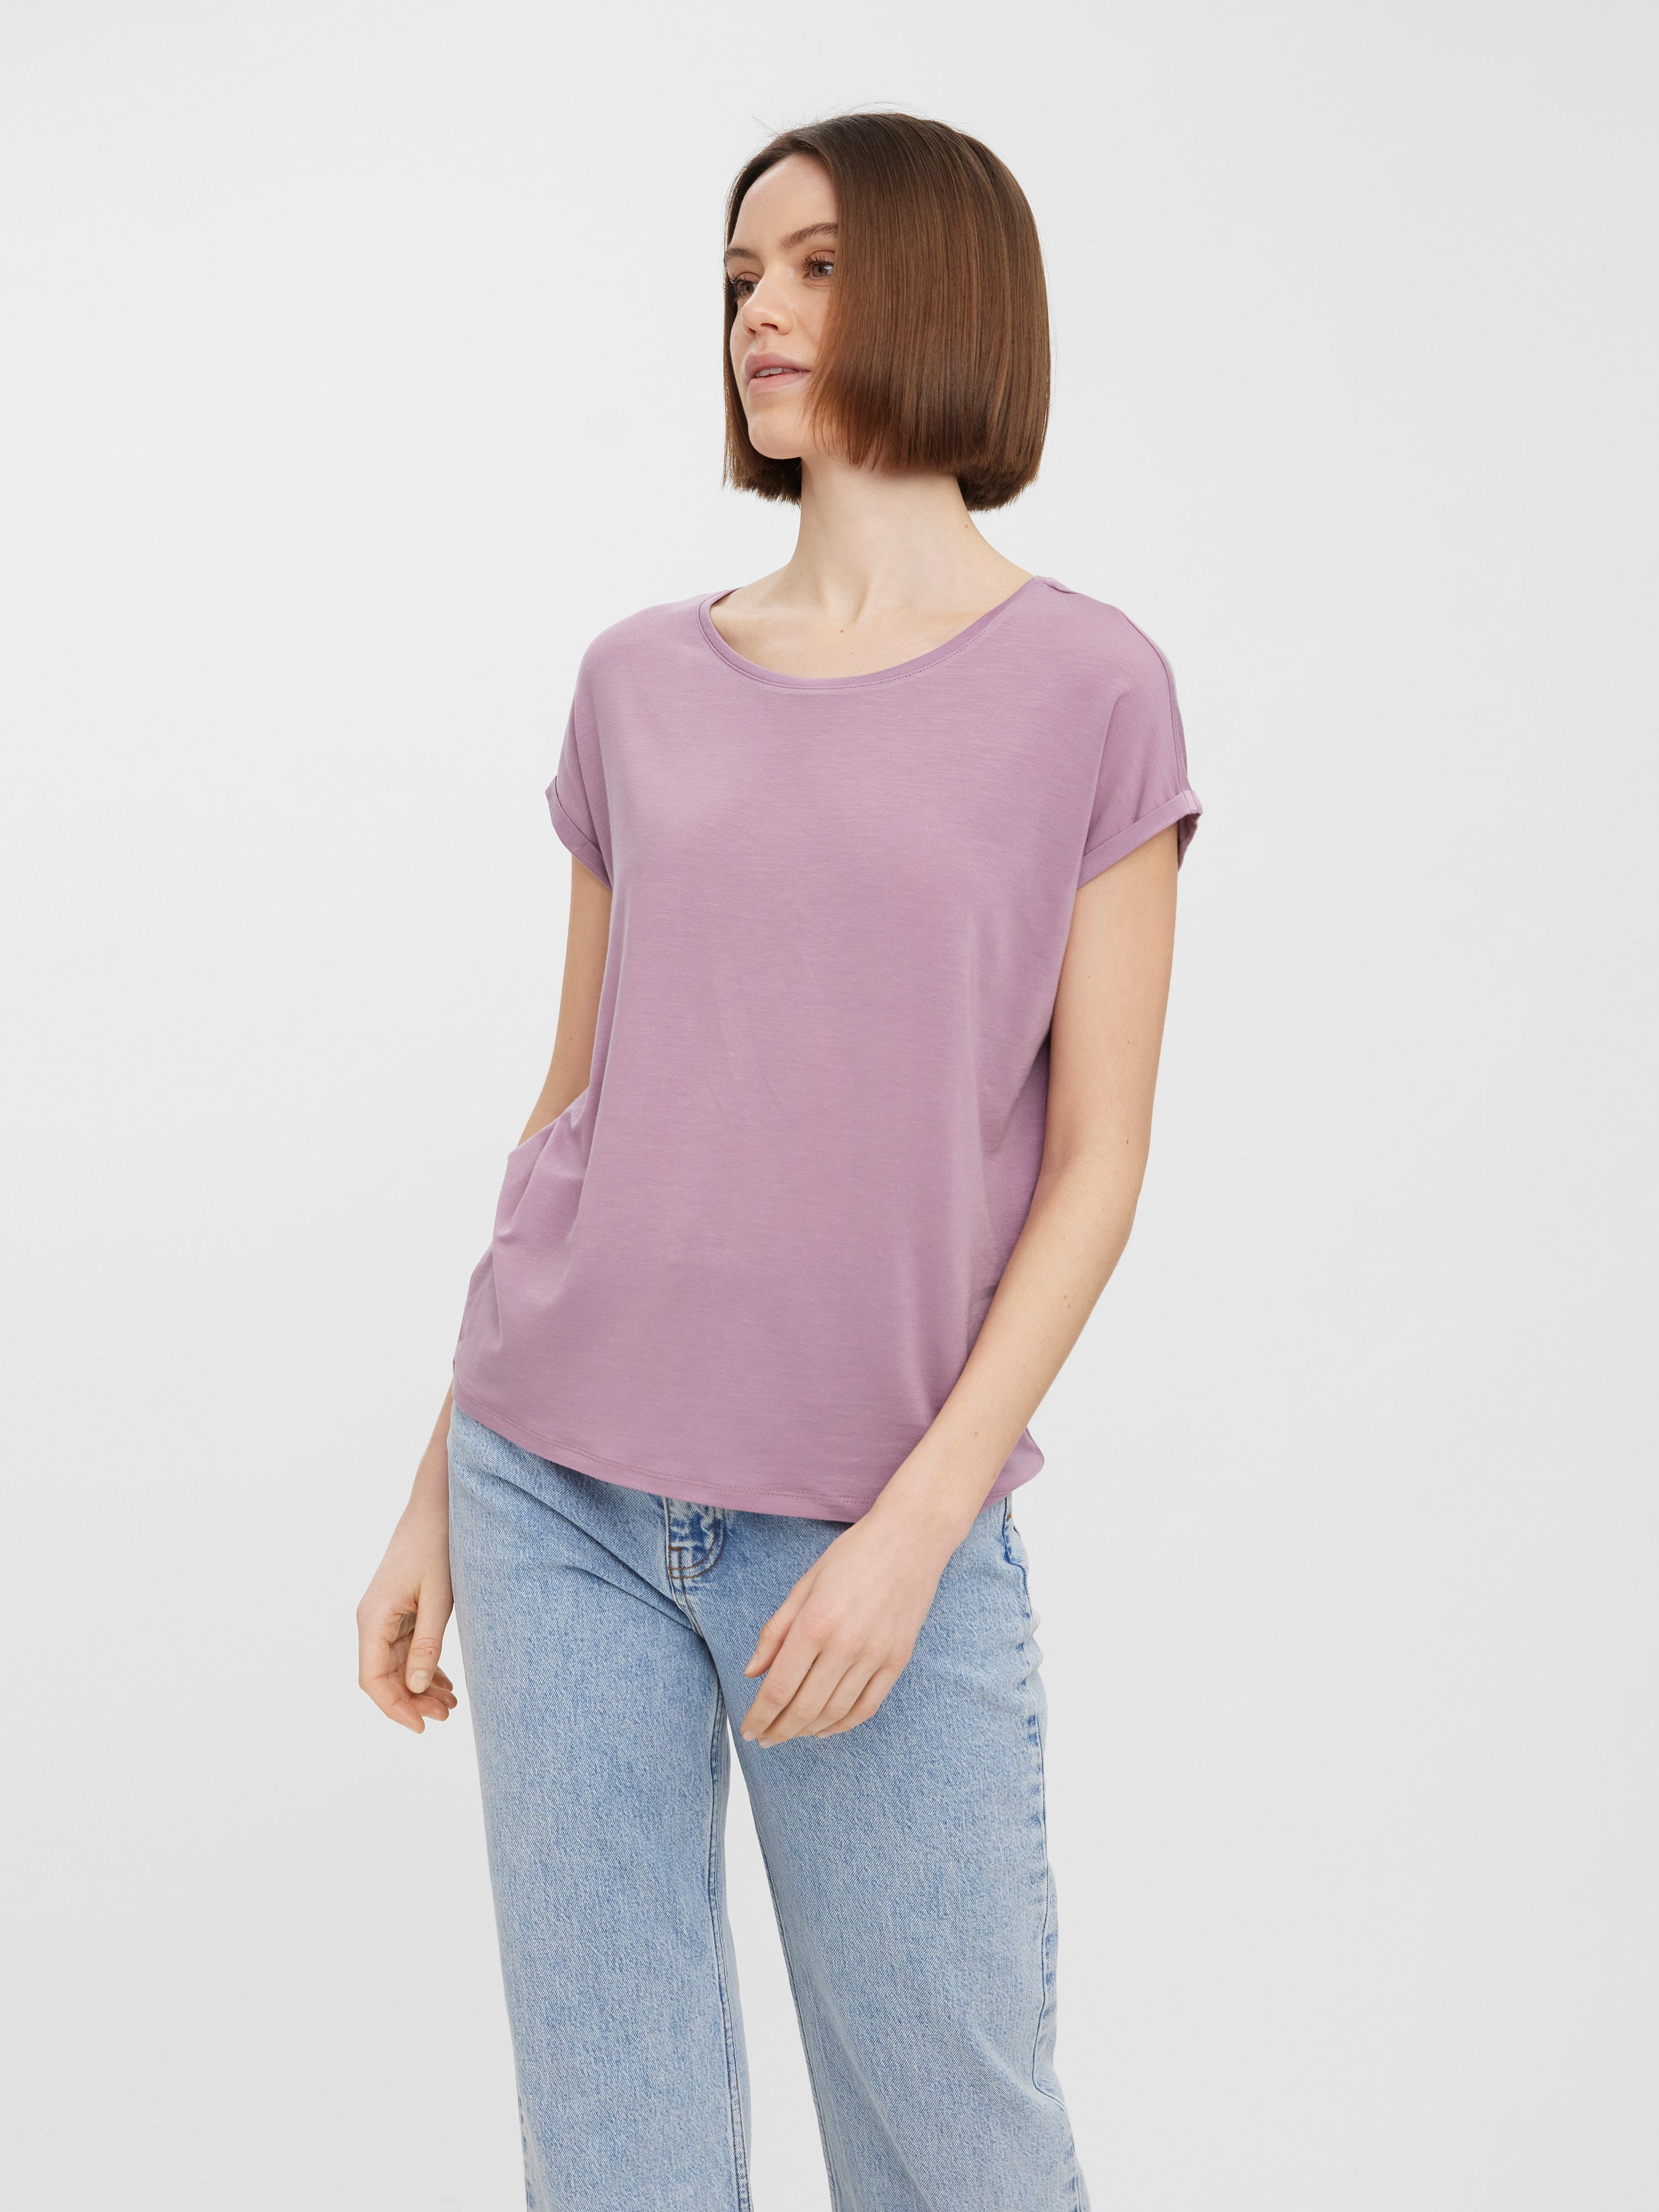 Rosa/Golden DAMEN Hemden & T-Shirts T-Shirt Print Vero Moda T-Shirt Rabatt 58 % 